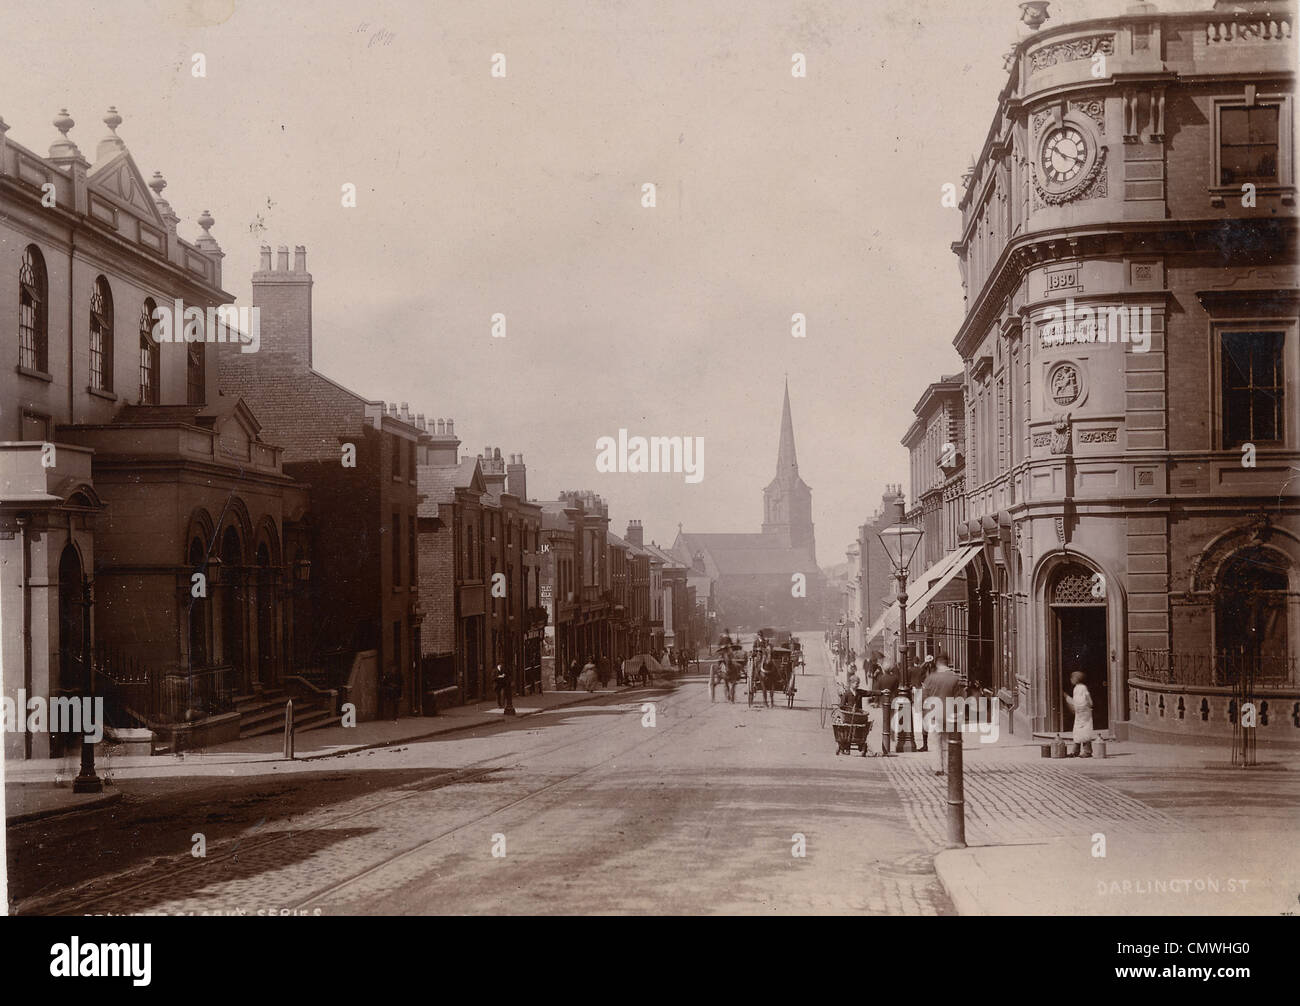 La rue Darlington, Wolverhampton, années 1890. La rue Darlington aux jonctions avec Waterloo Road (à droite) et la rue School Banque D'Images